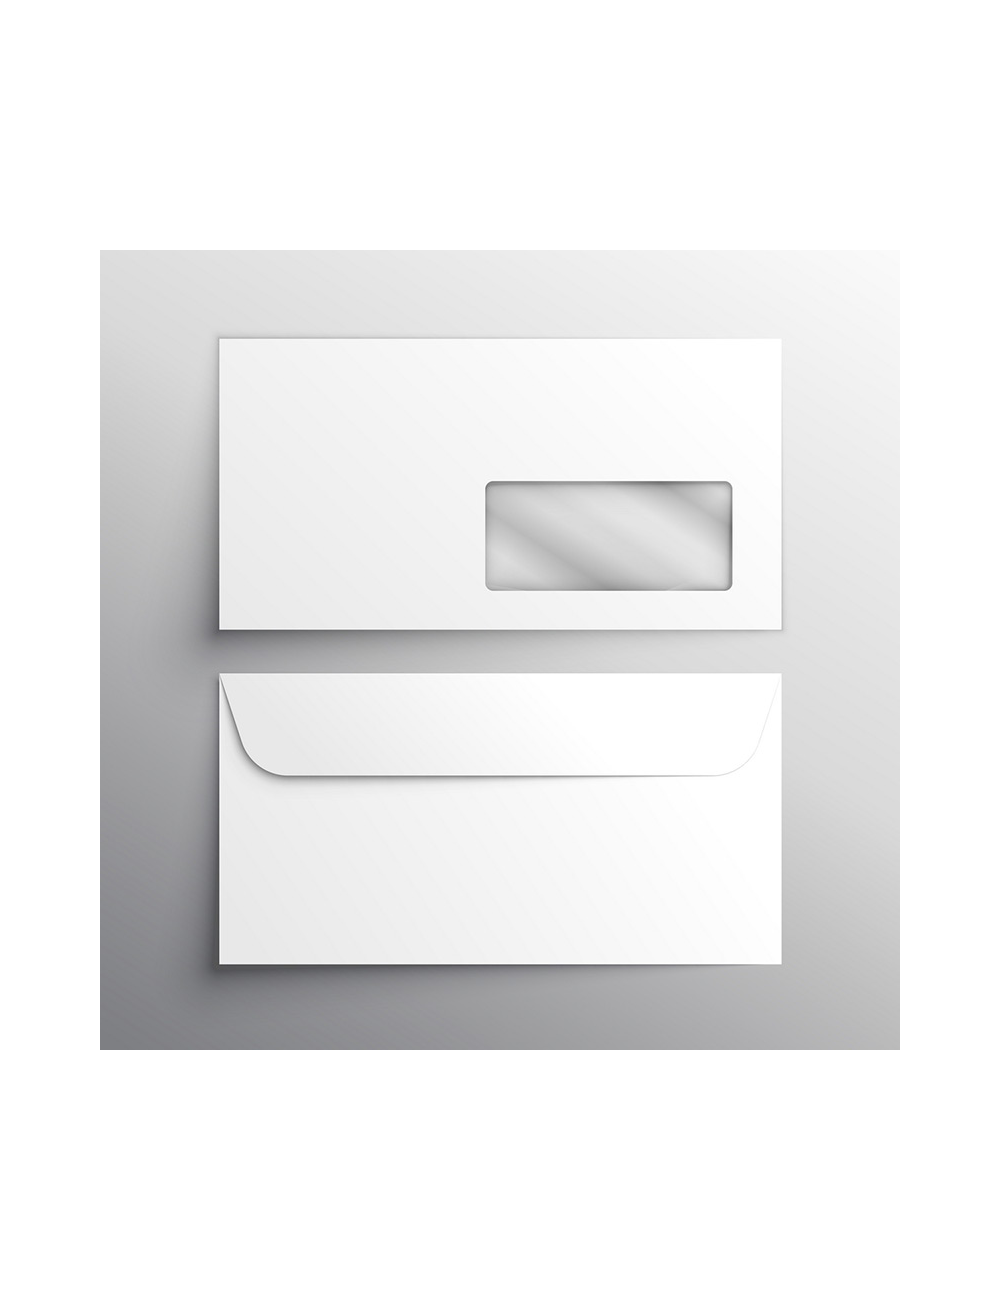 Enveloppes DL 90g personnalisées en quadrichromie avec fenêtre